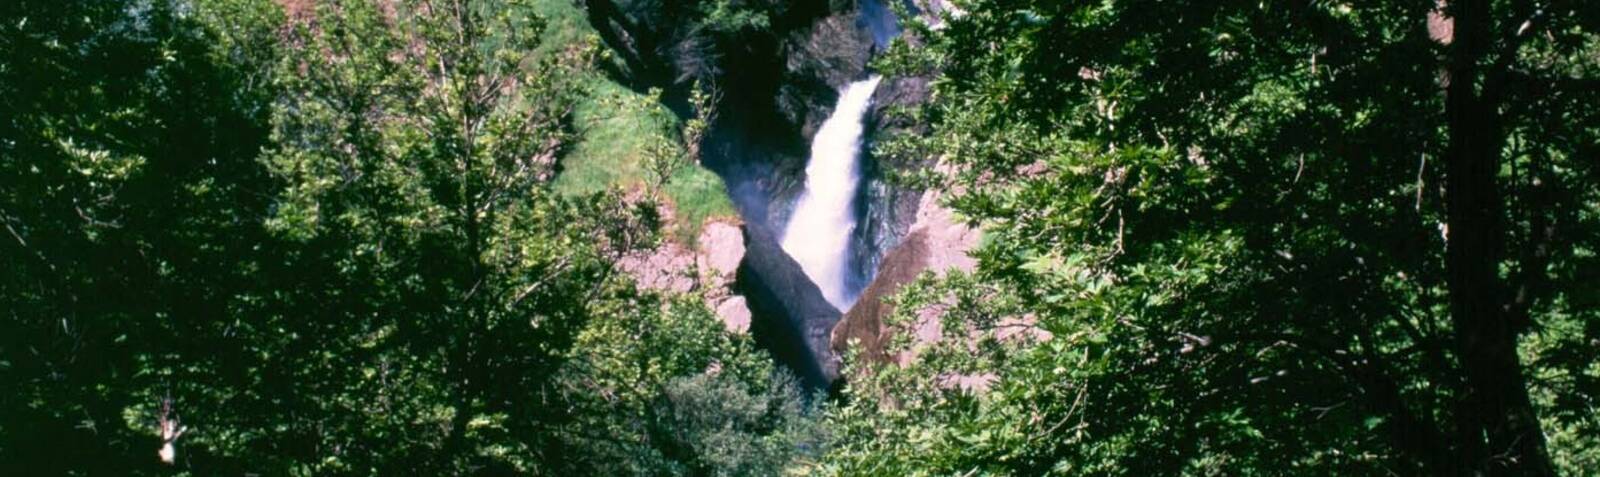 Waterfalls of Shalmash 